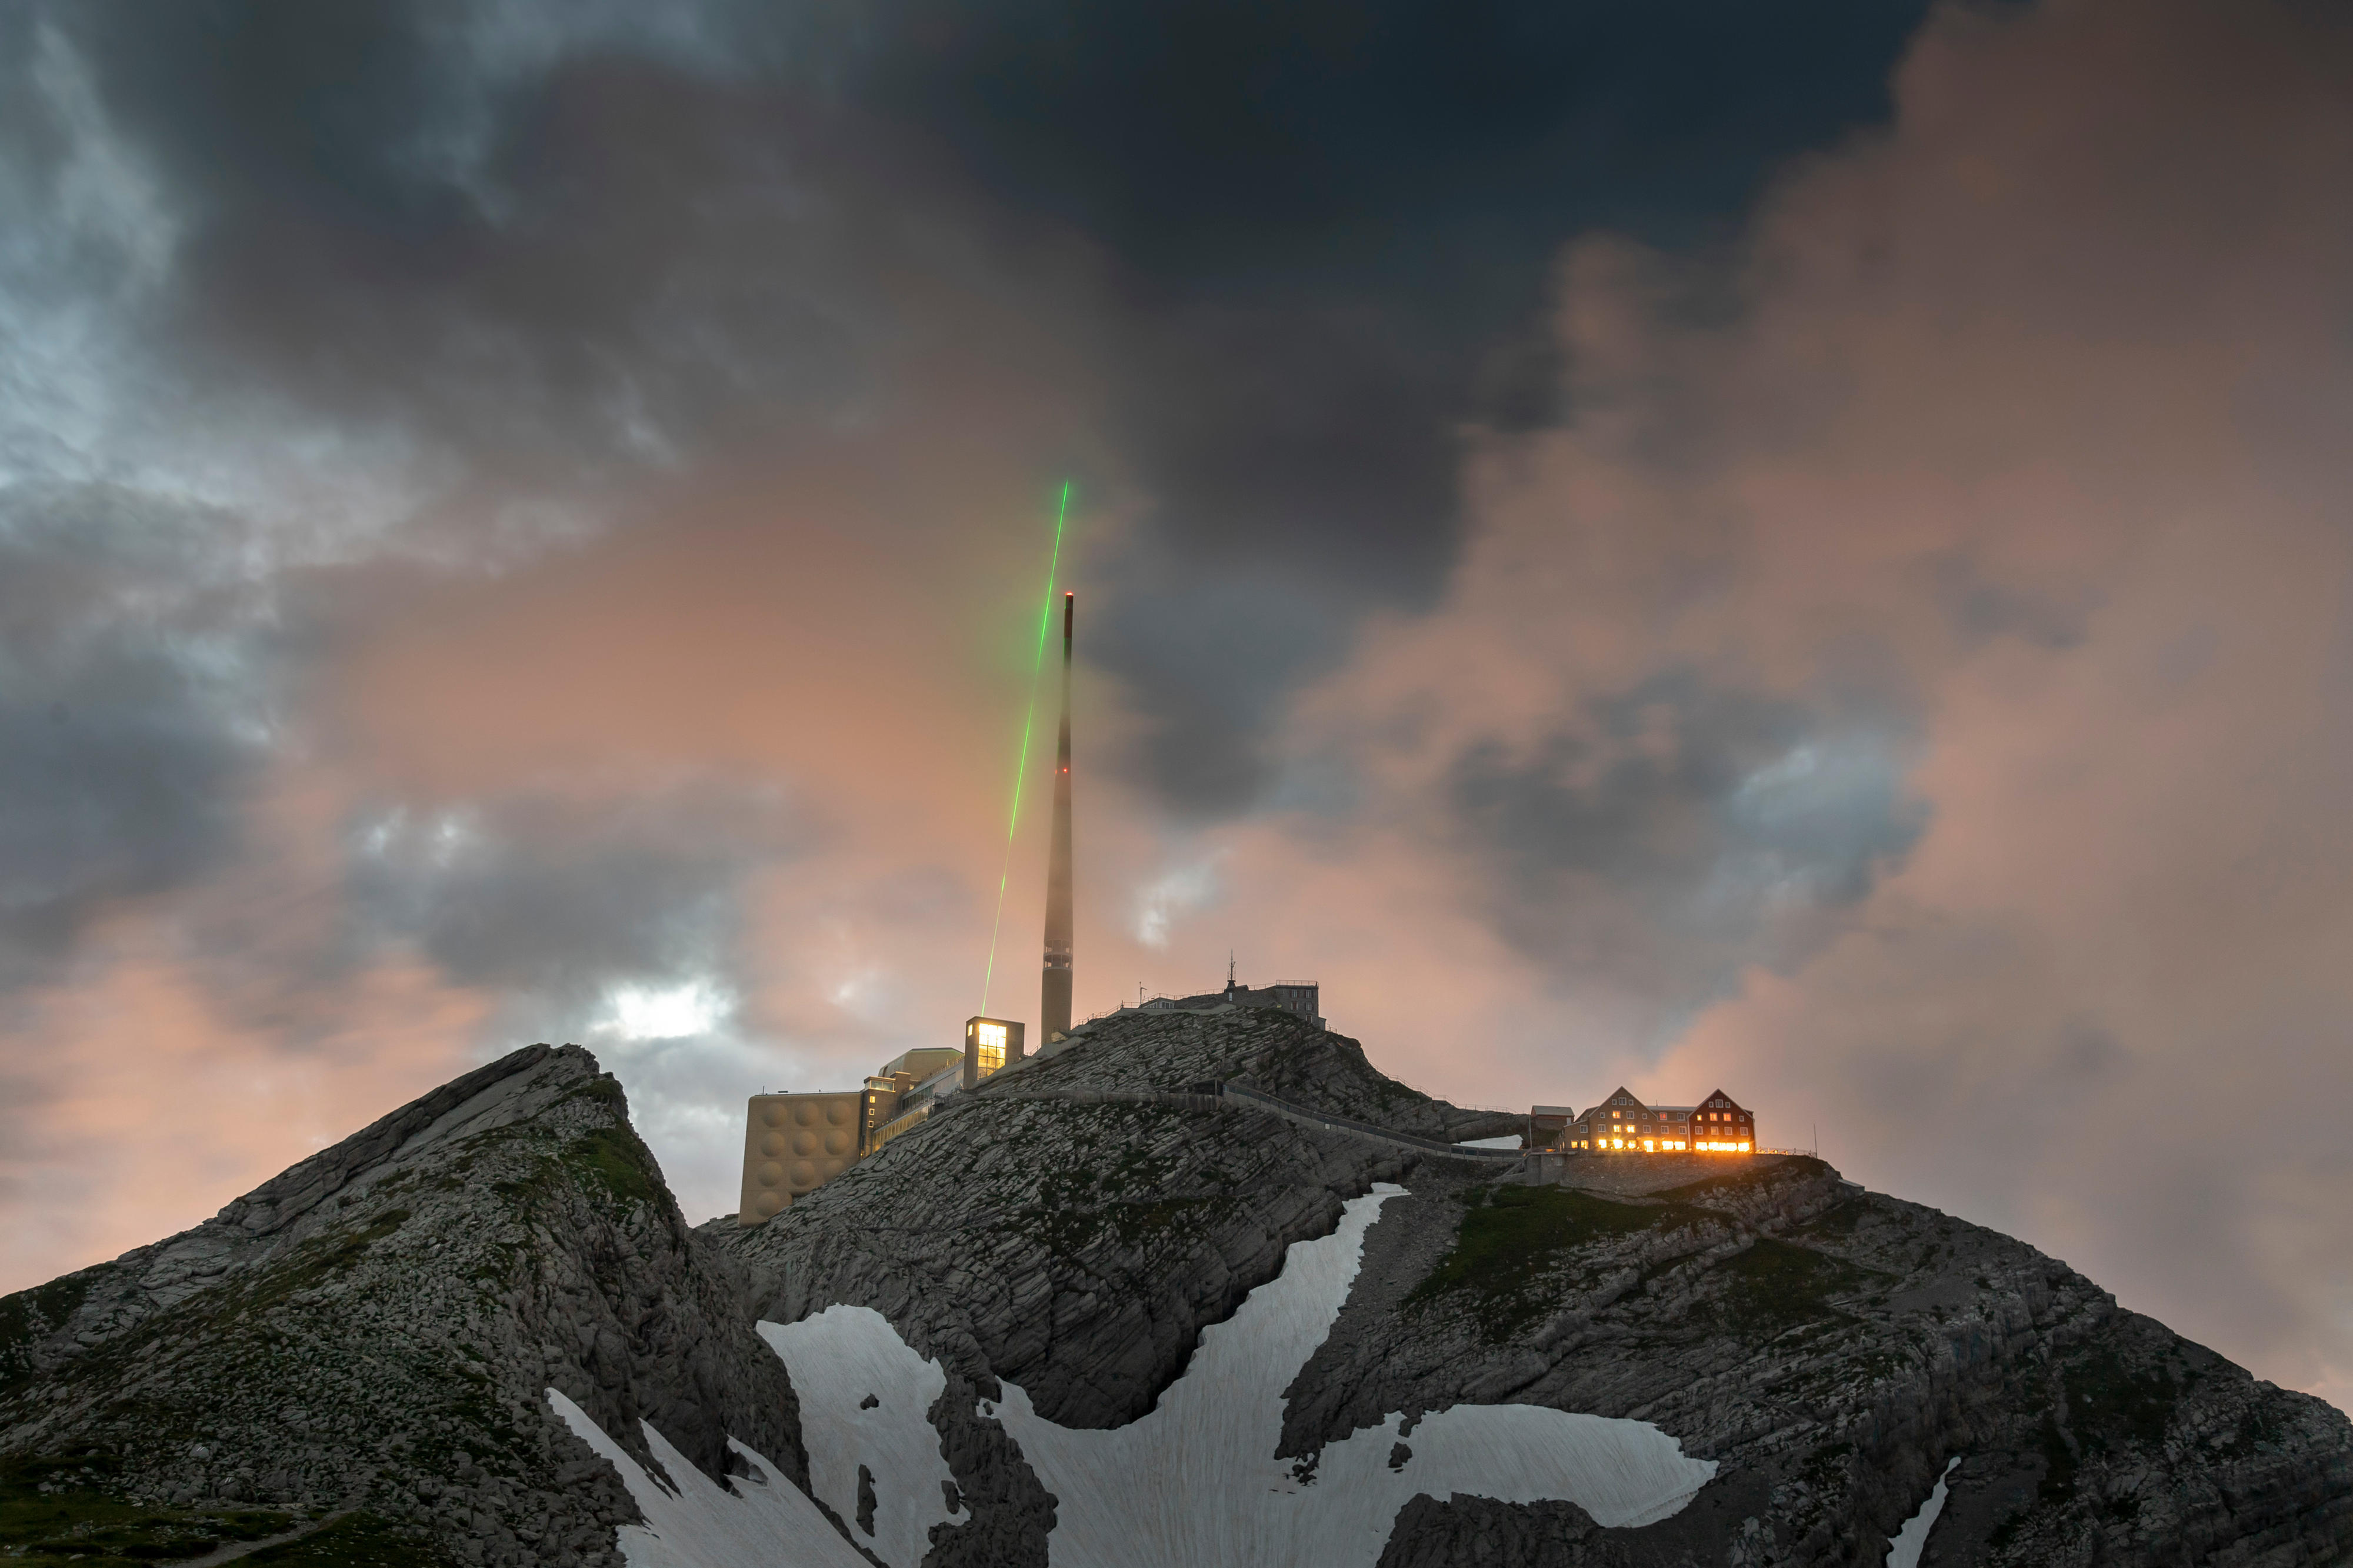 Auf einem Alpengipfel strahlt ein grüner Laser in einen verdunkelten Himmel über einem Antennenmast